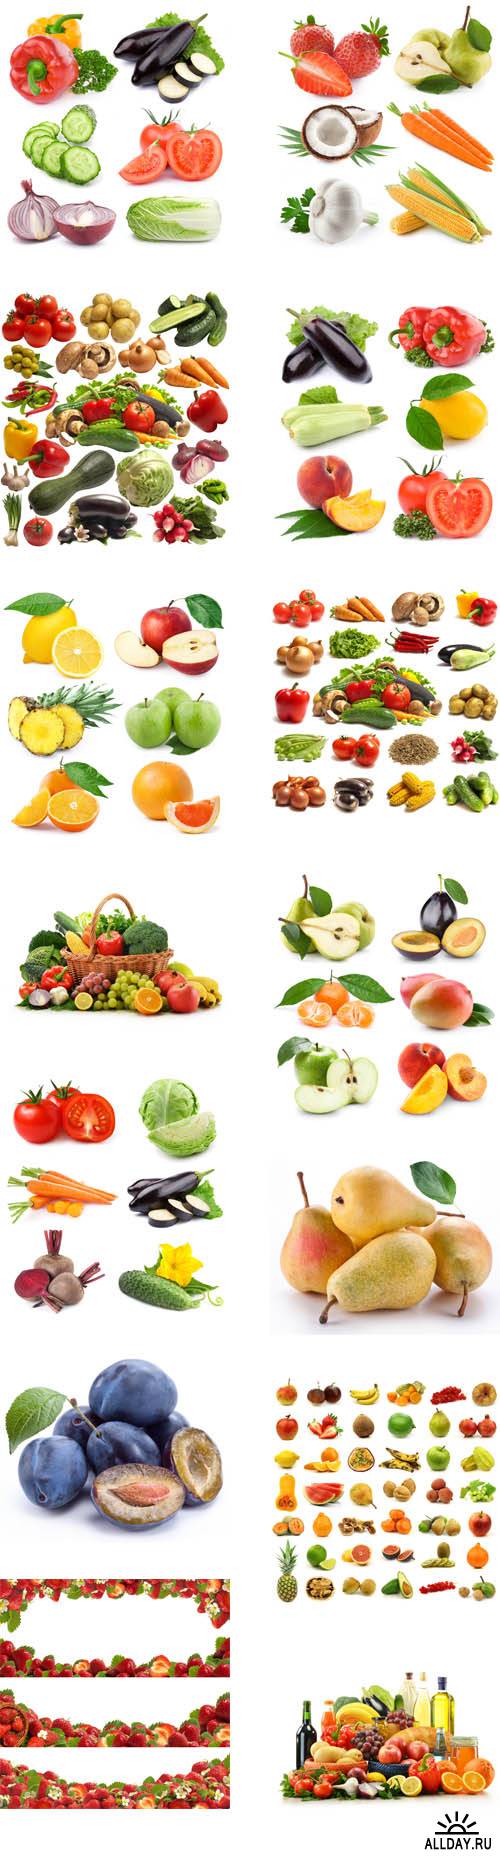 Fresh fruits, vegetables, berries